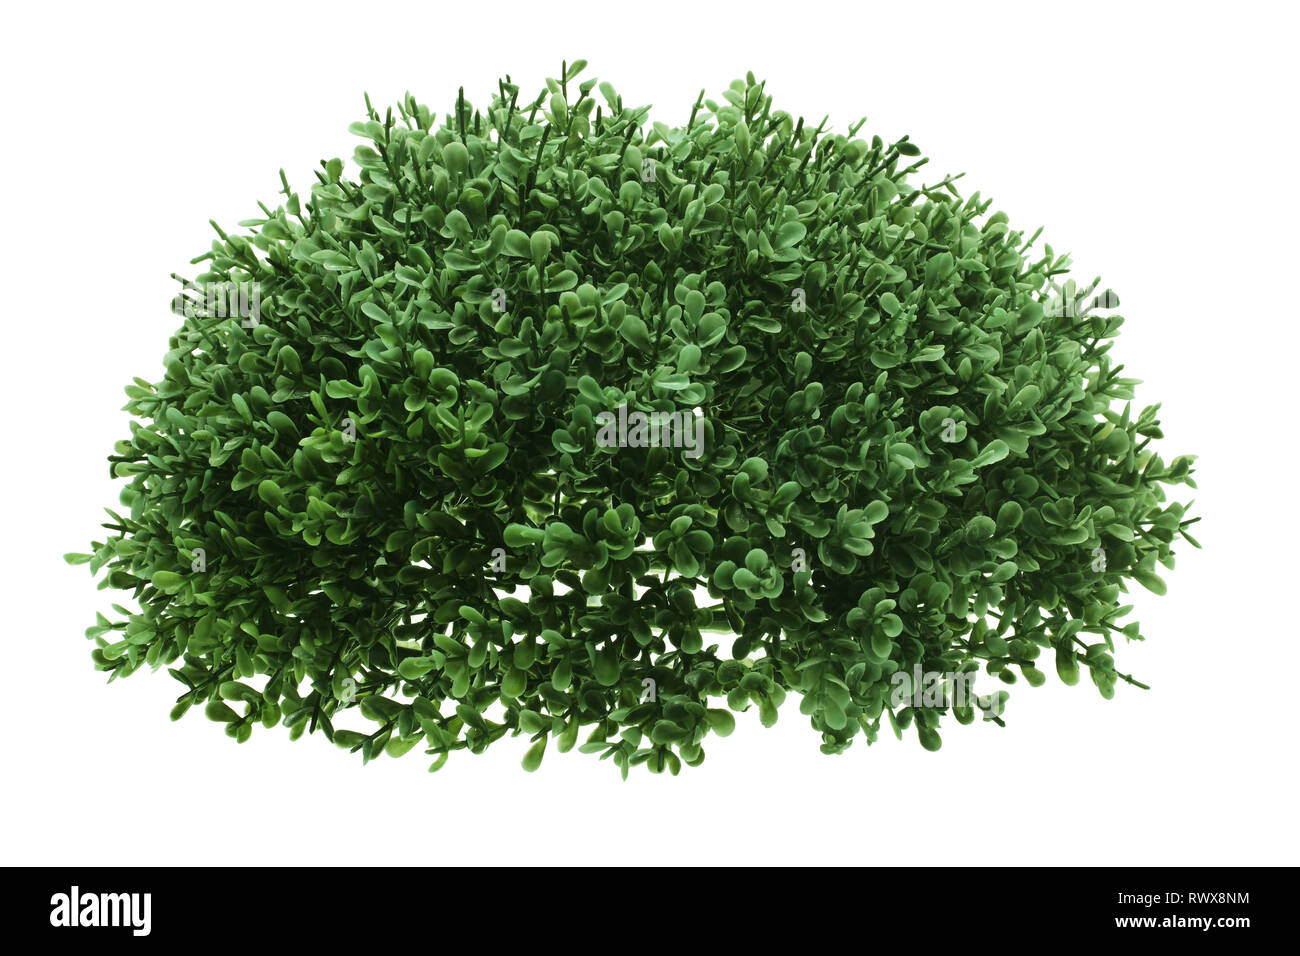 Green Shrub on White Background Stock Photo - Alamy